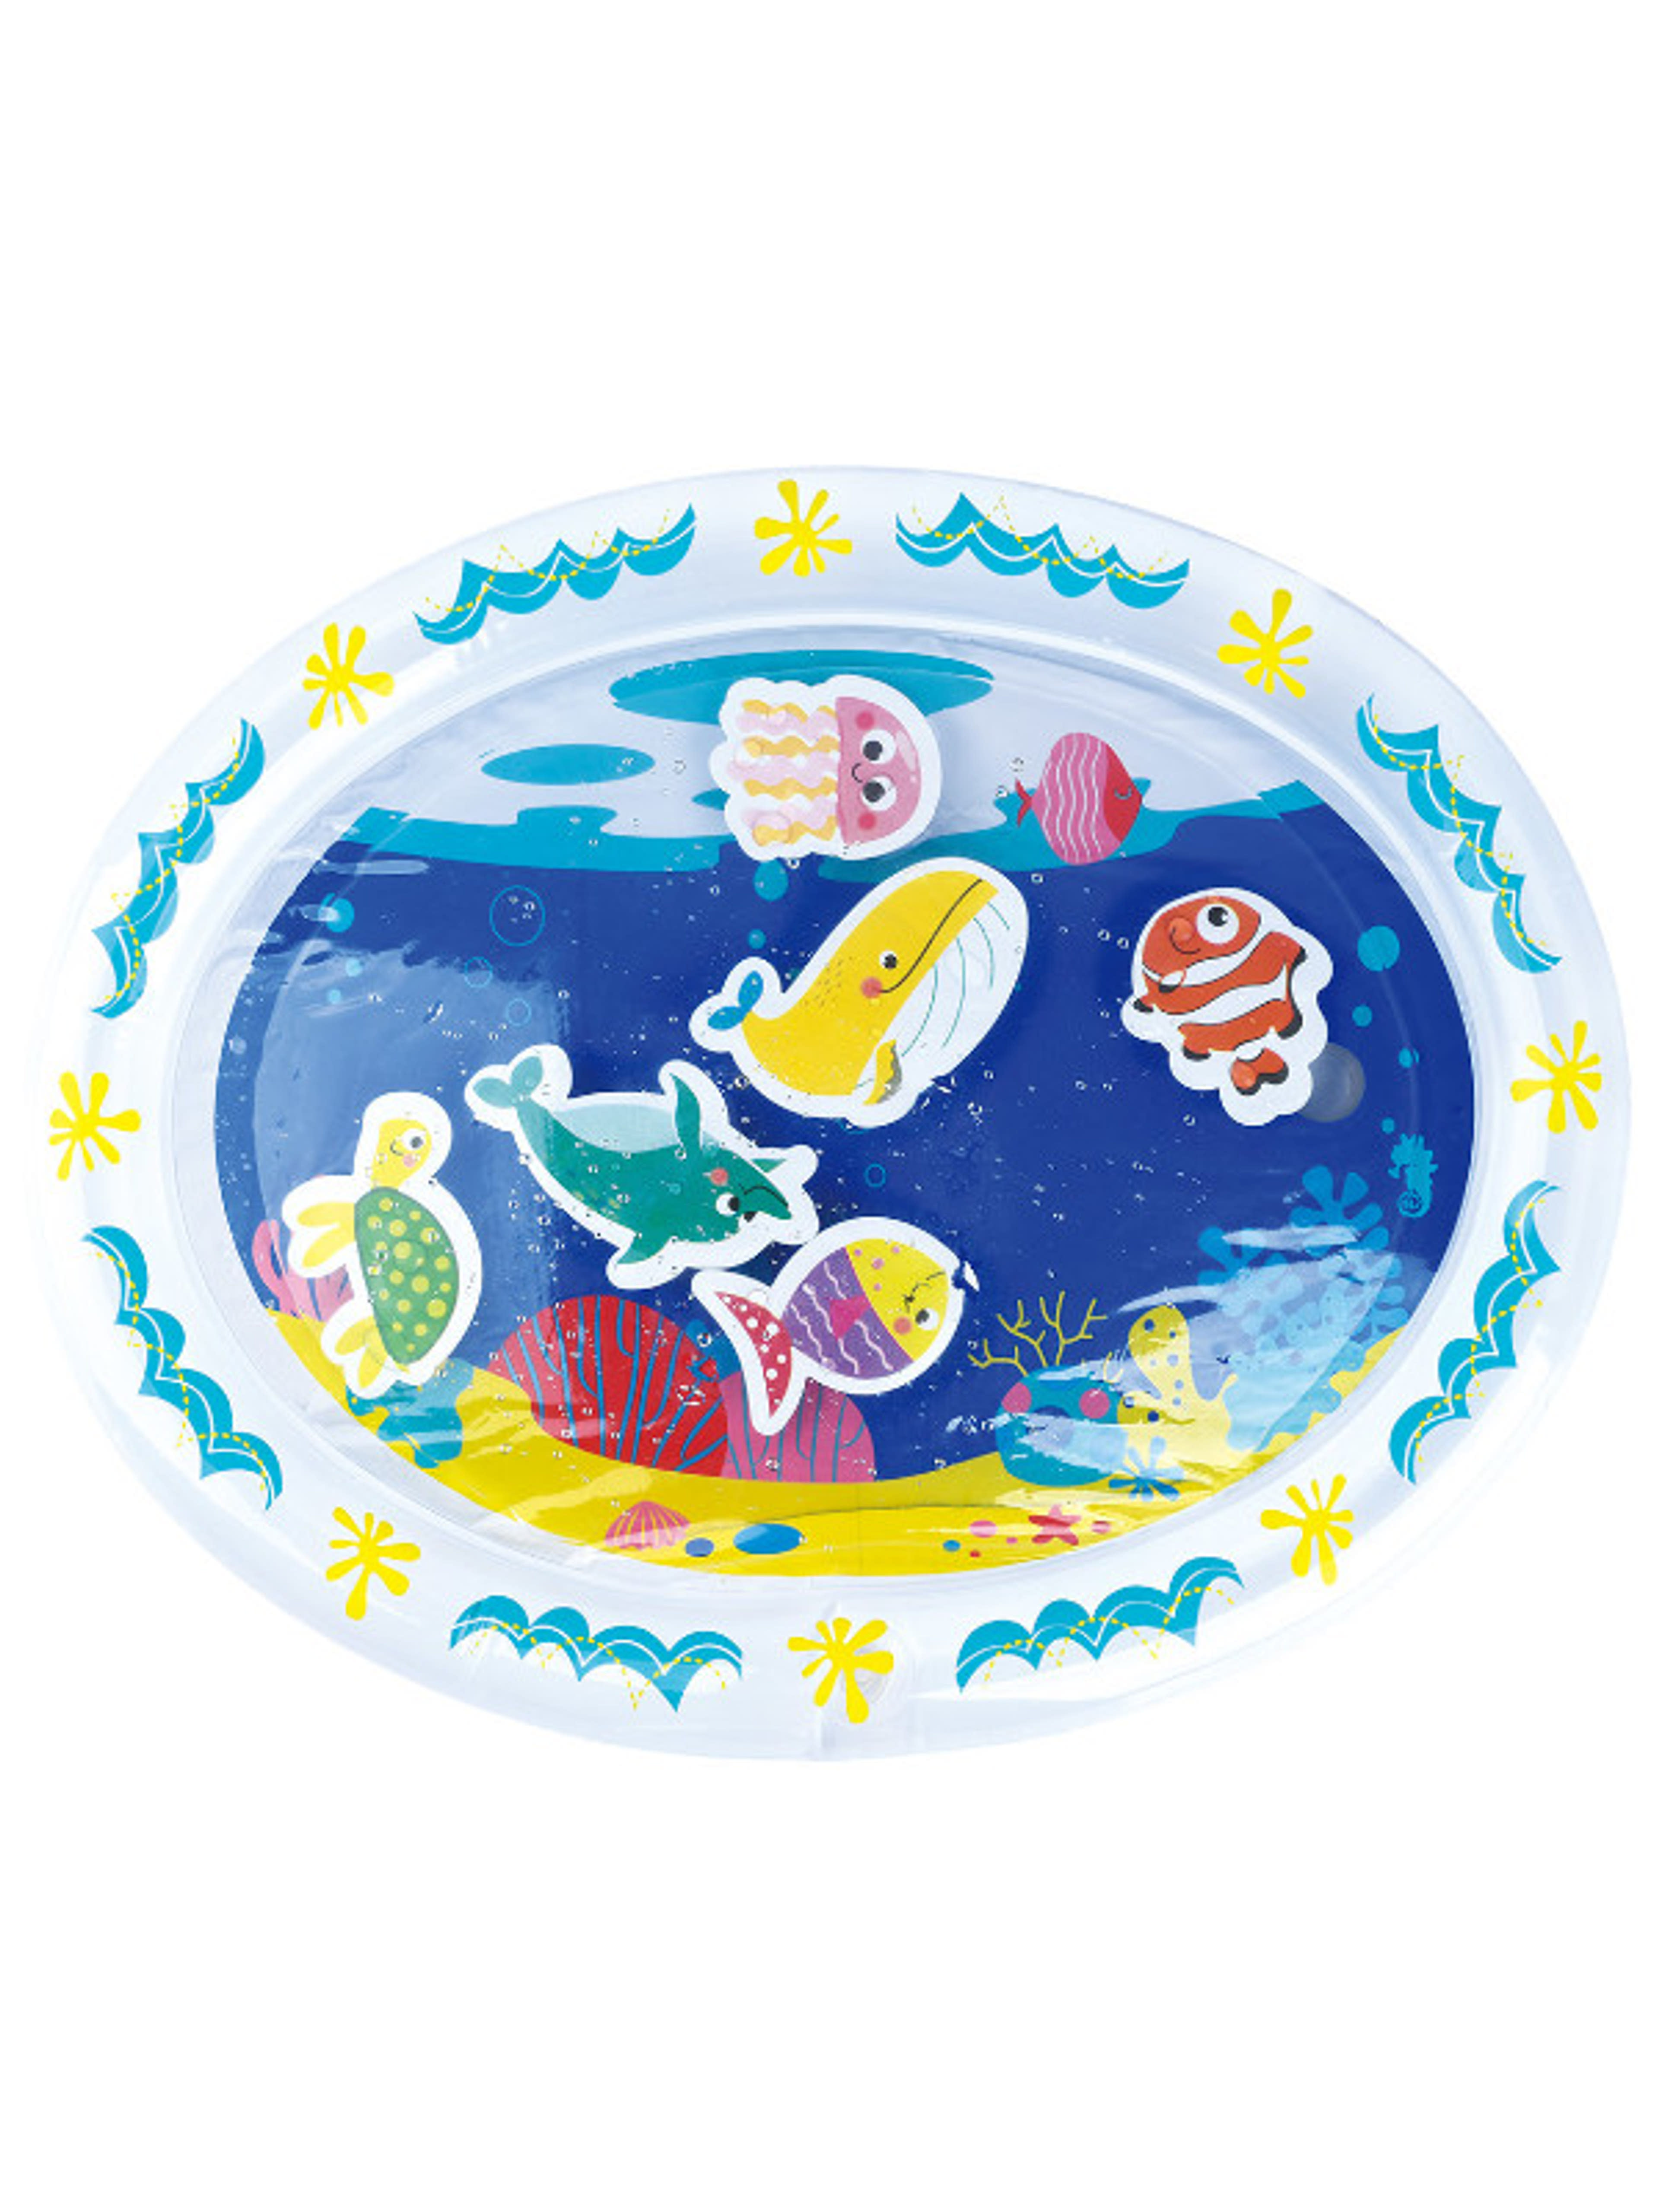 Playgo tengeri világ játszószőnyeg - 1 db-2